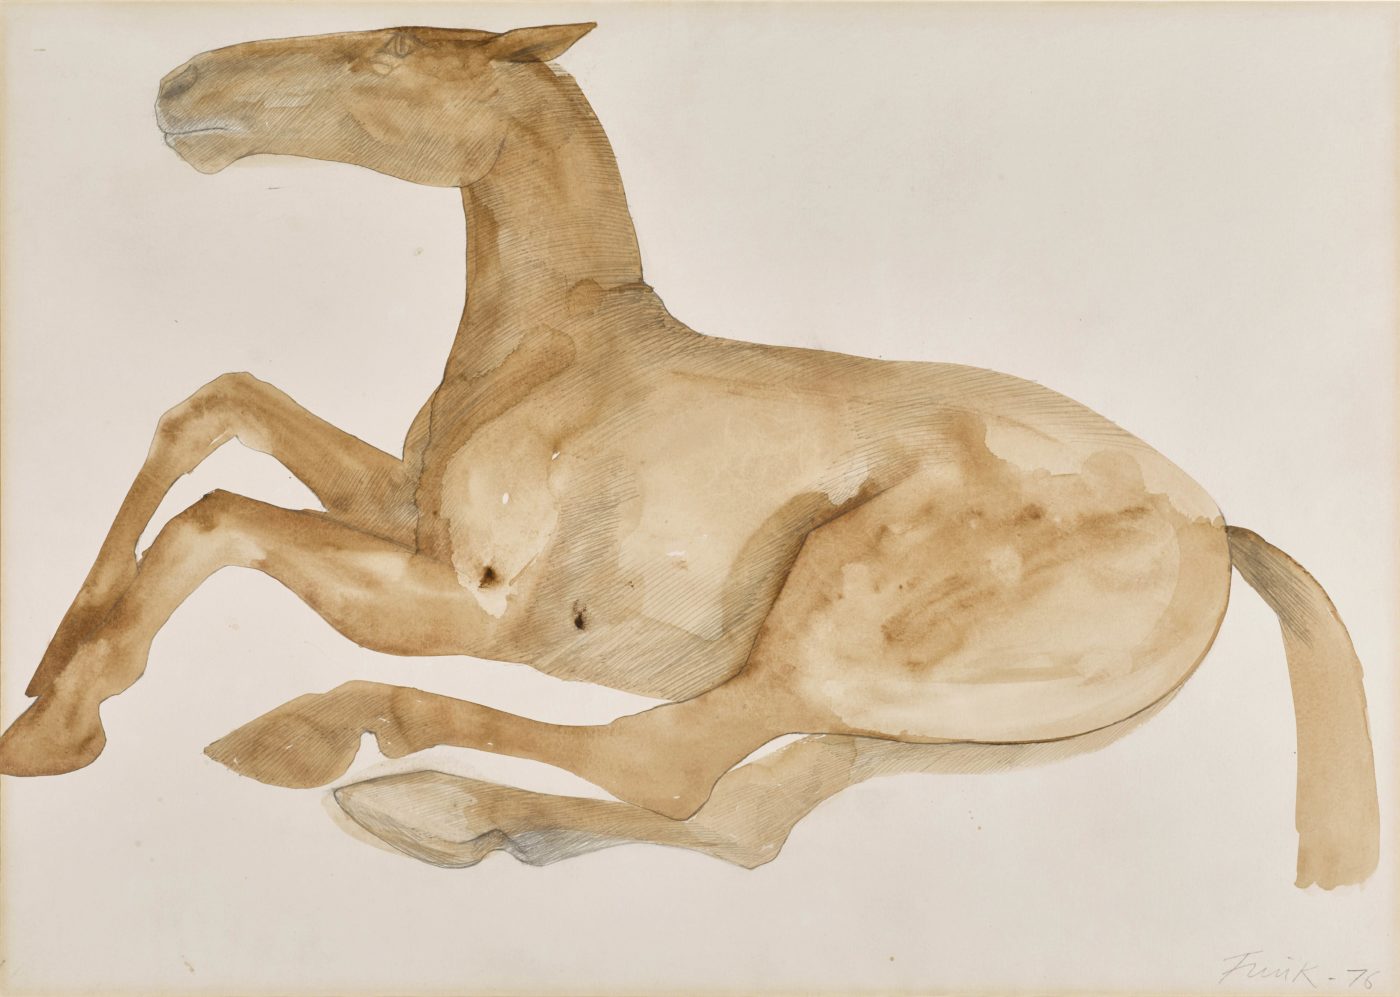 Dame Elisabeth Frink, CH RA (1930-1993), Lying Down Horse